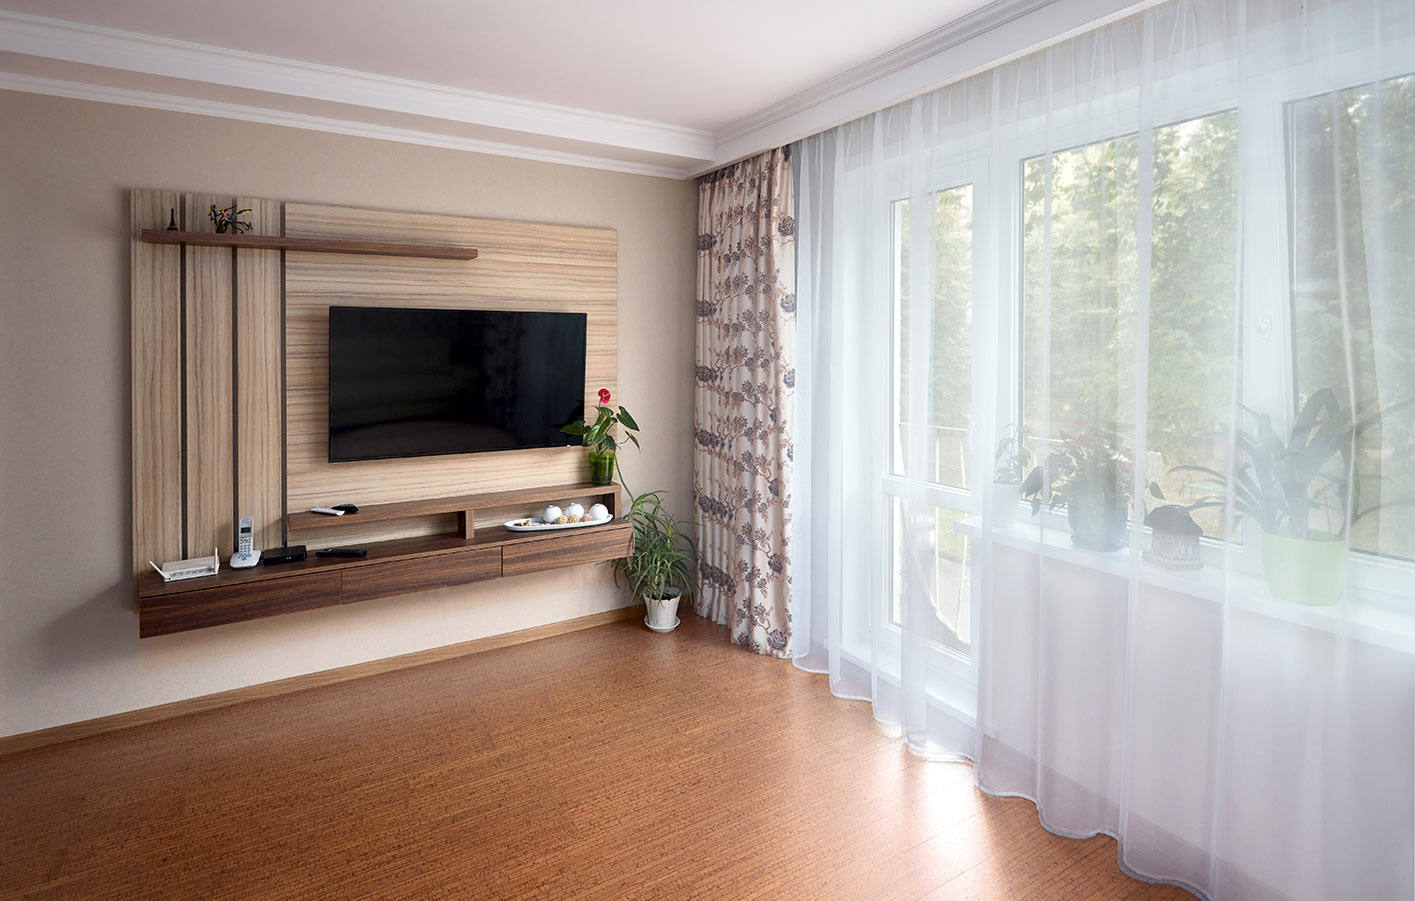 Wohnraum - leer mit Korkboden und TV an der Wand